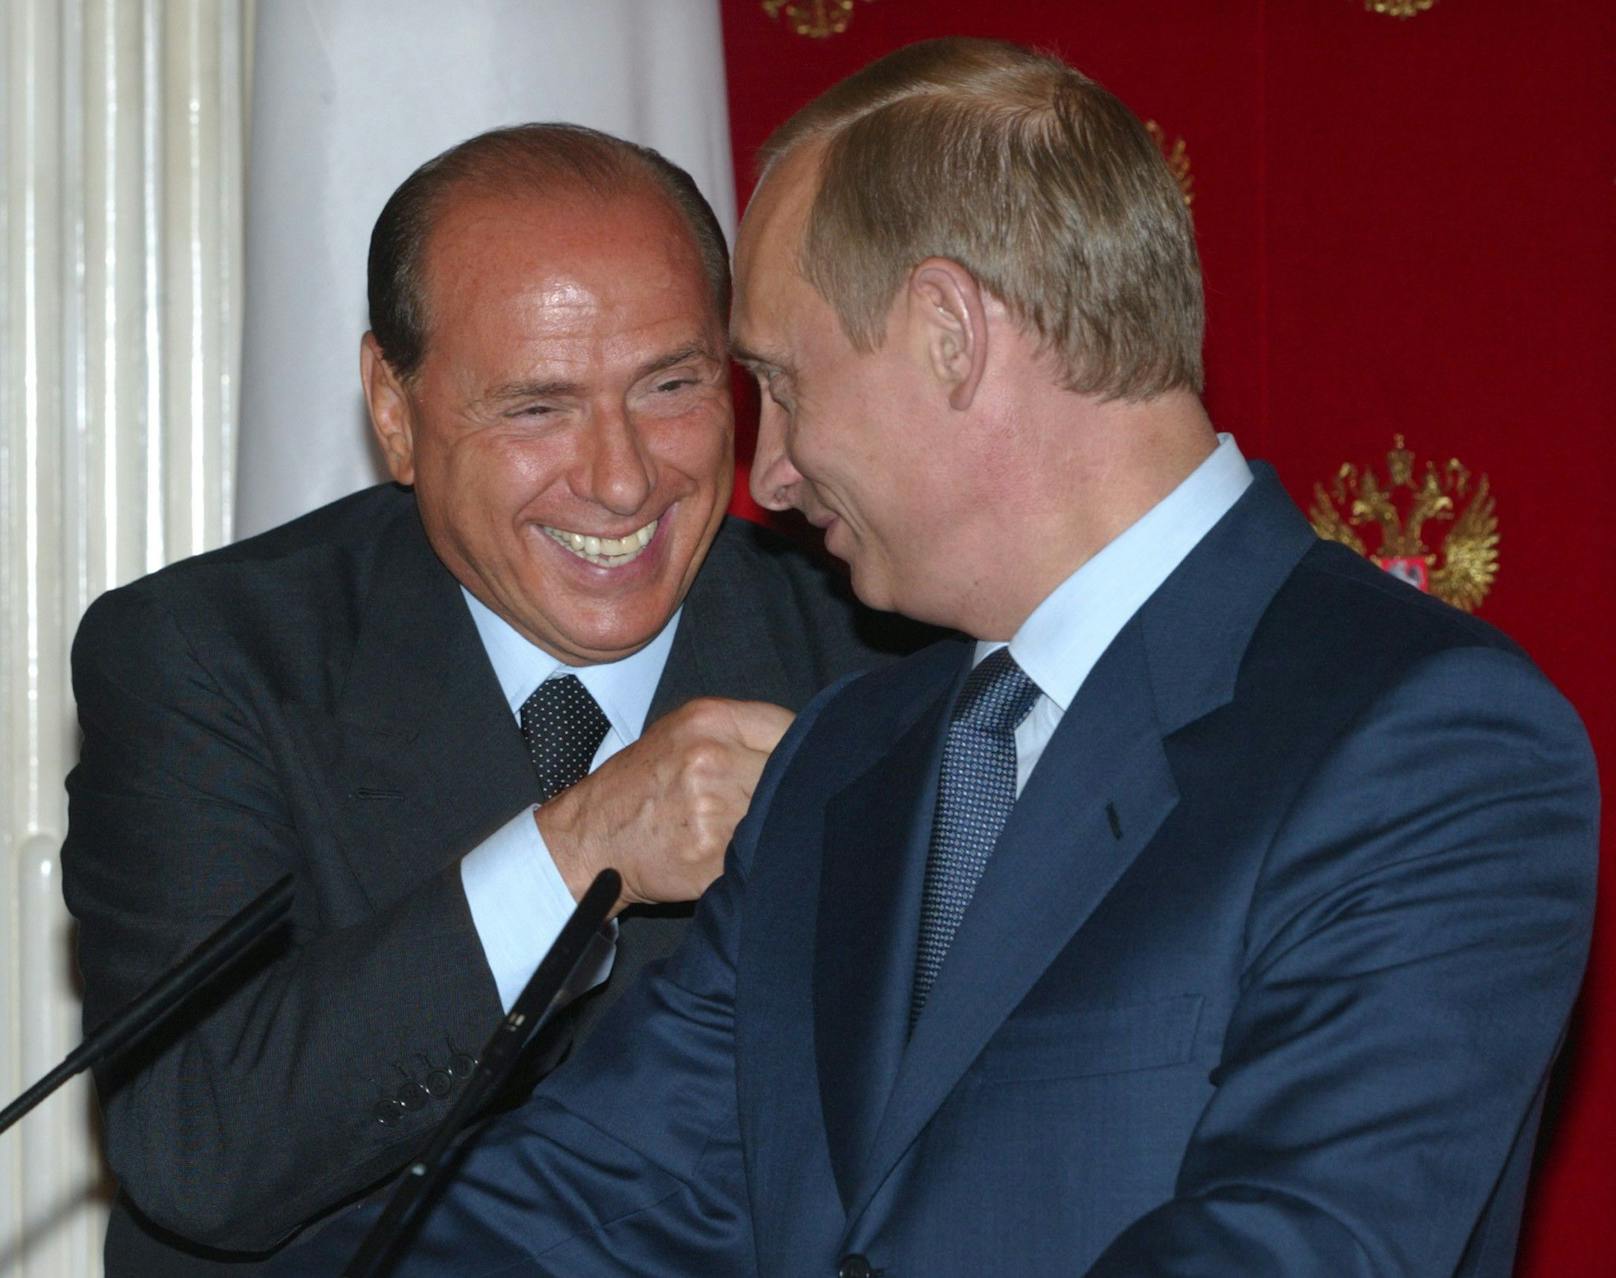 Putin lobte Berlusconi für Weitsicht, ausgewogene Entscheidungen, Humor und Lebensfreude.